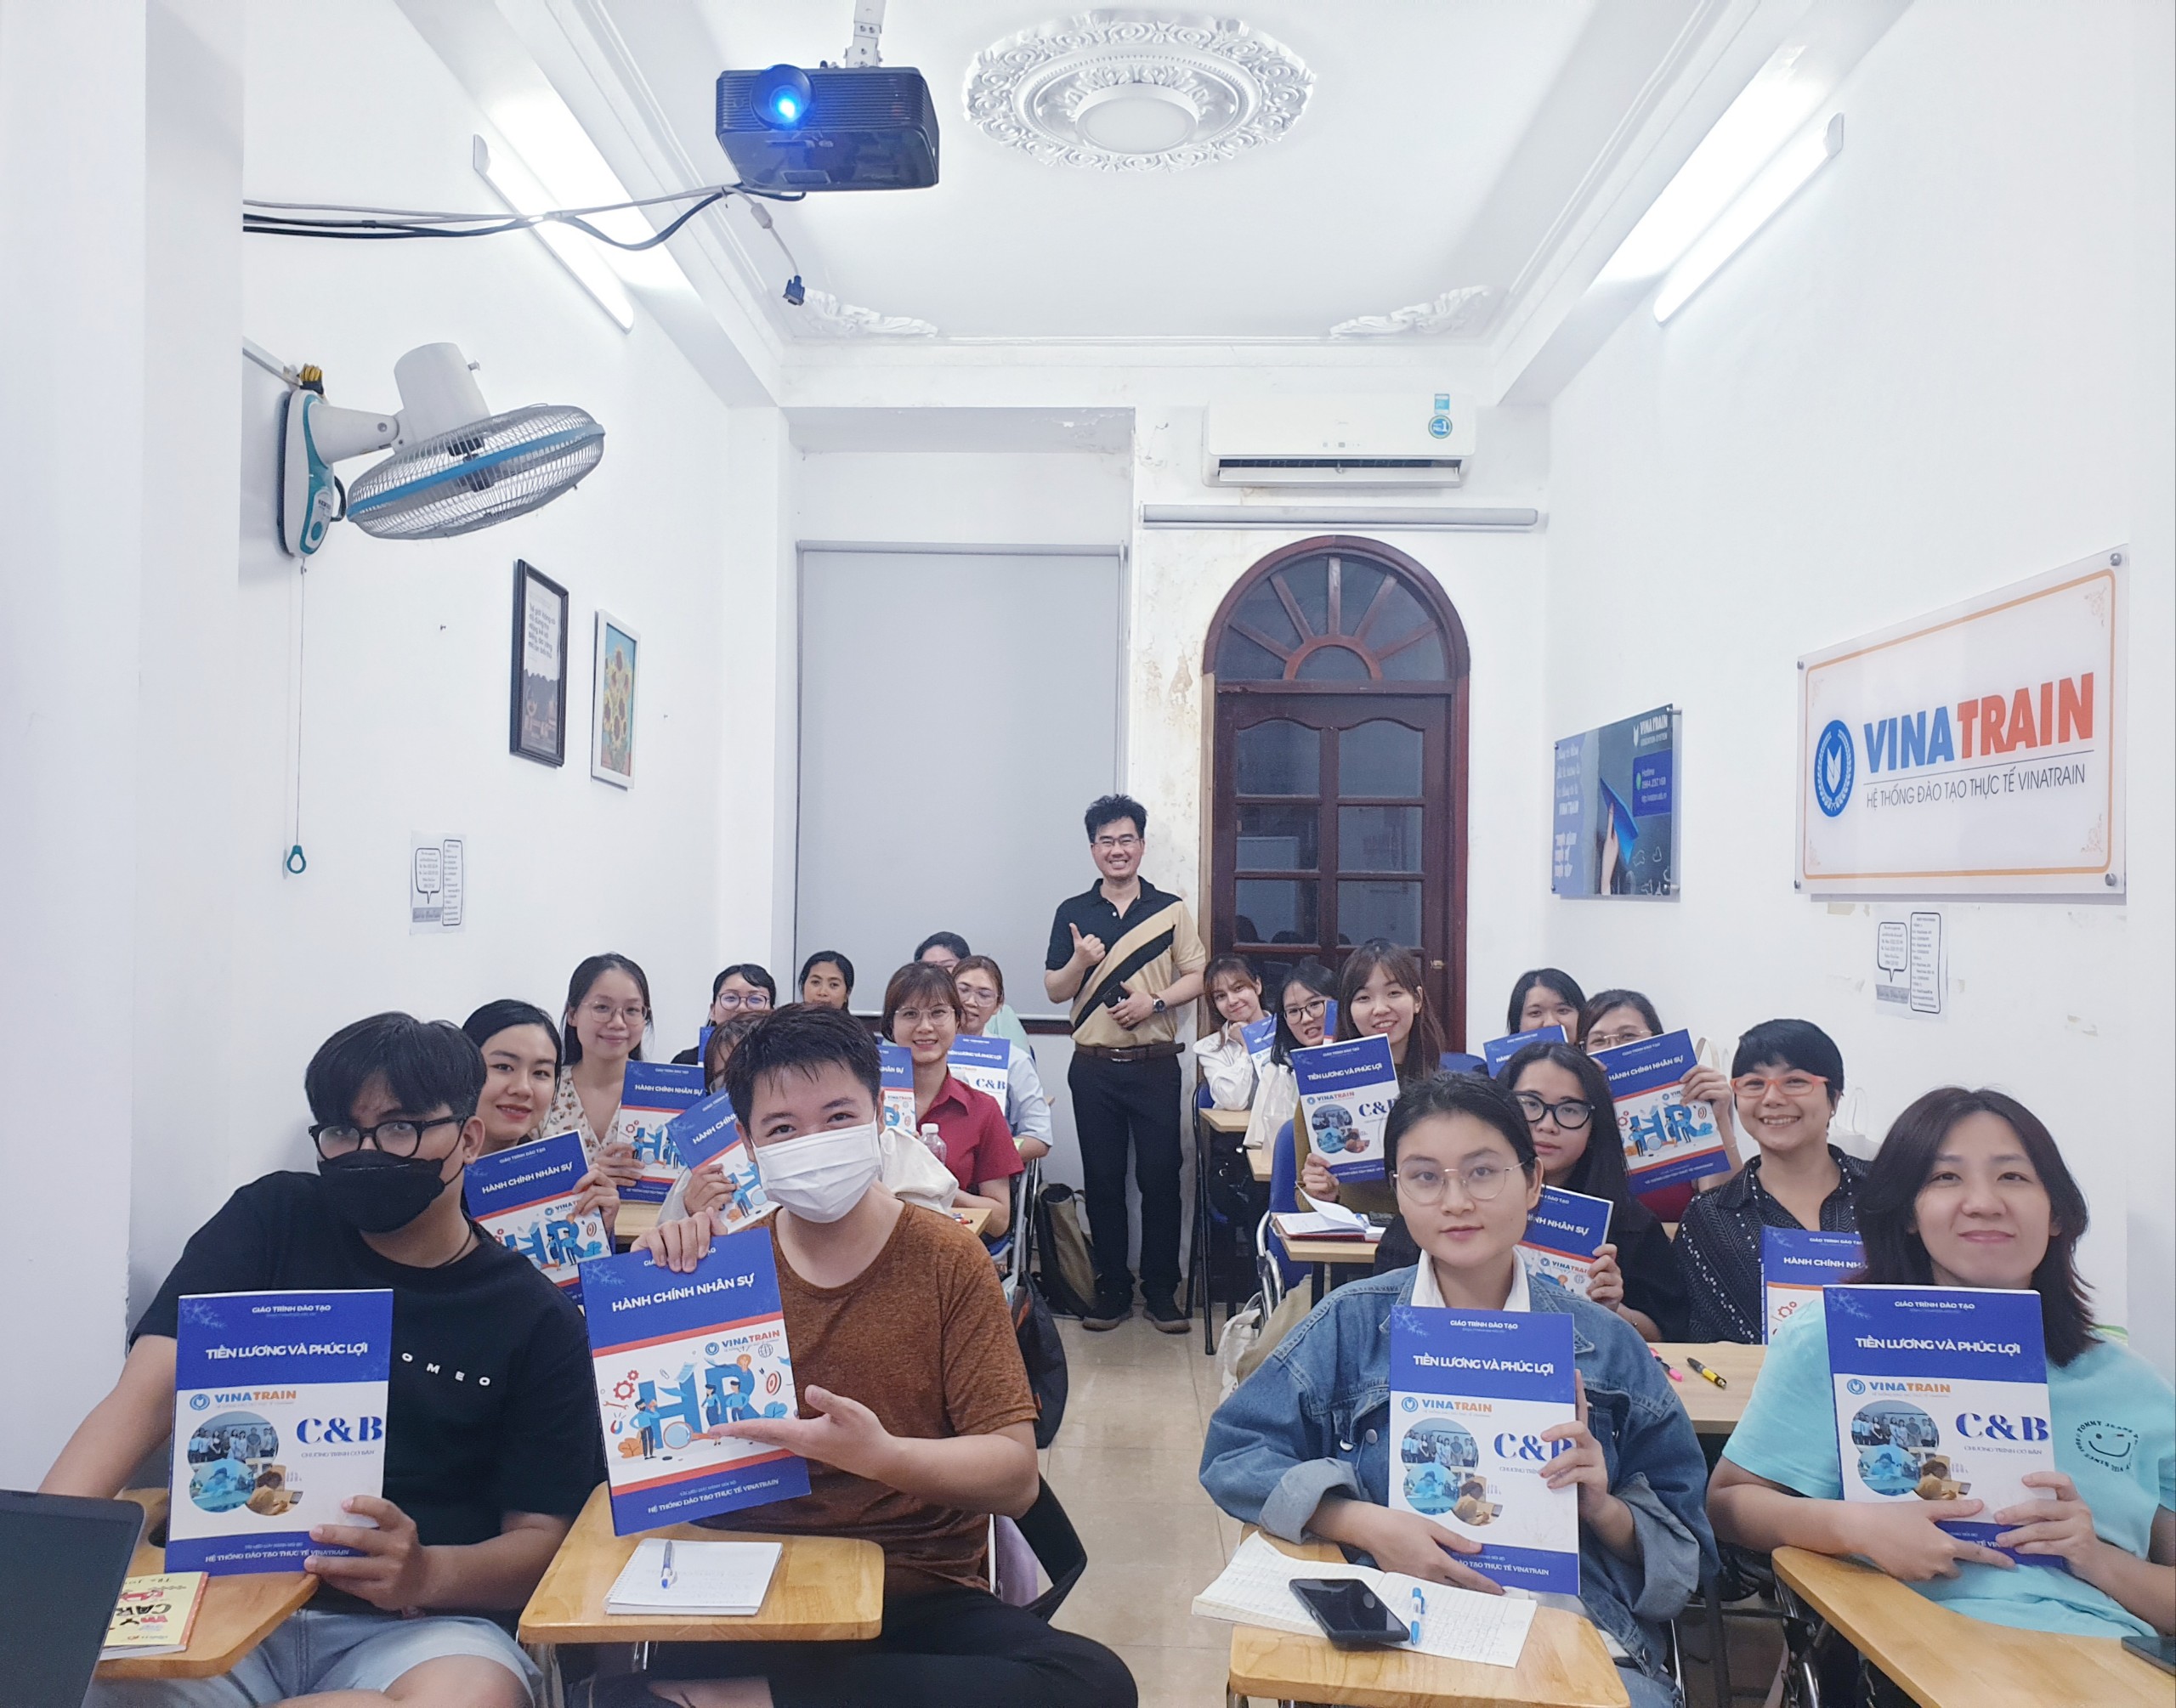 Khóa học tiền lương và phúc lợi (C&b) tại Hồ Chí Minh